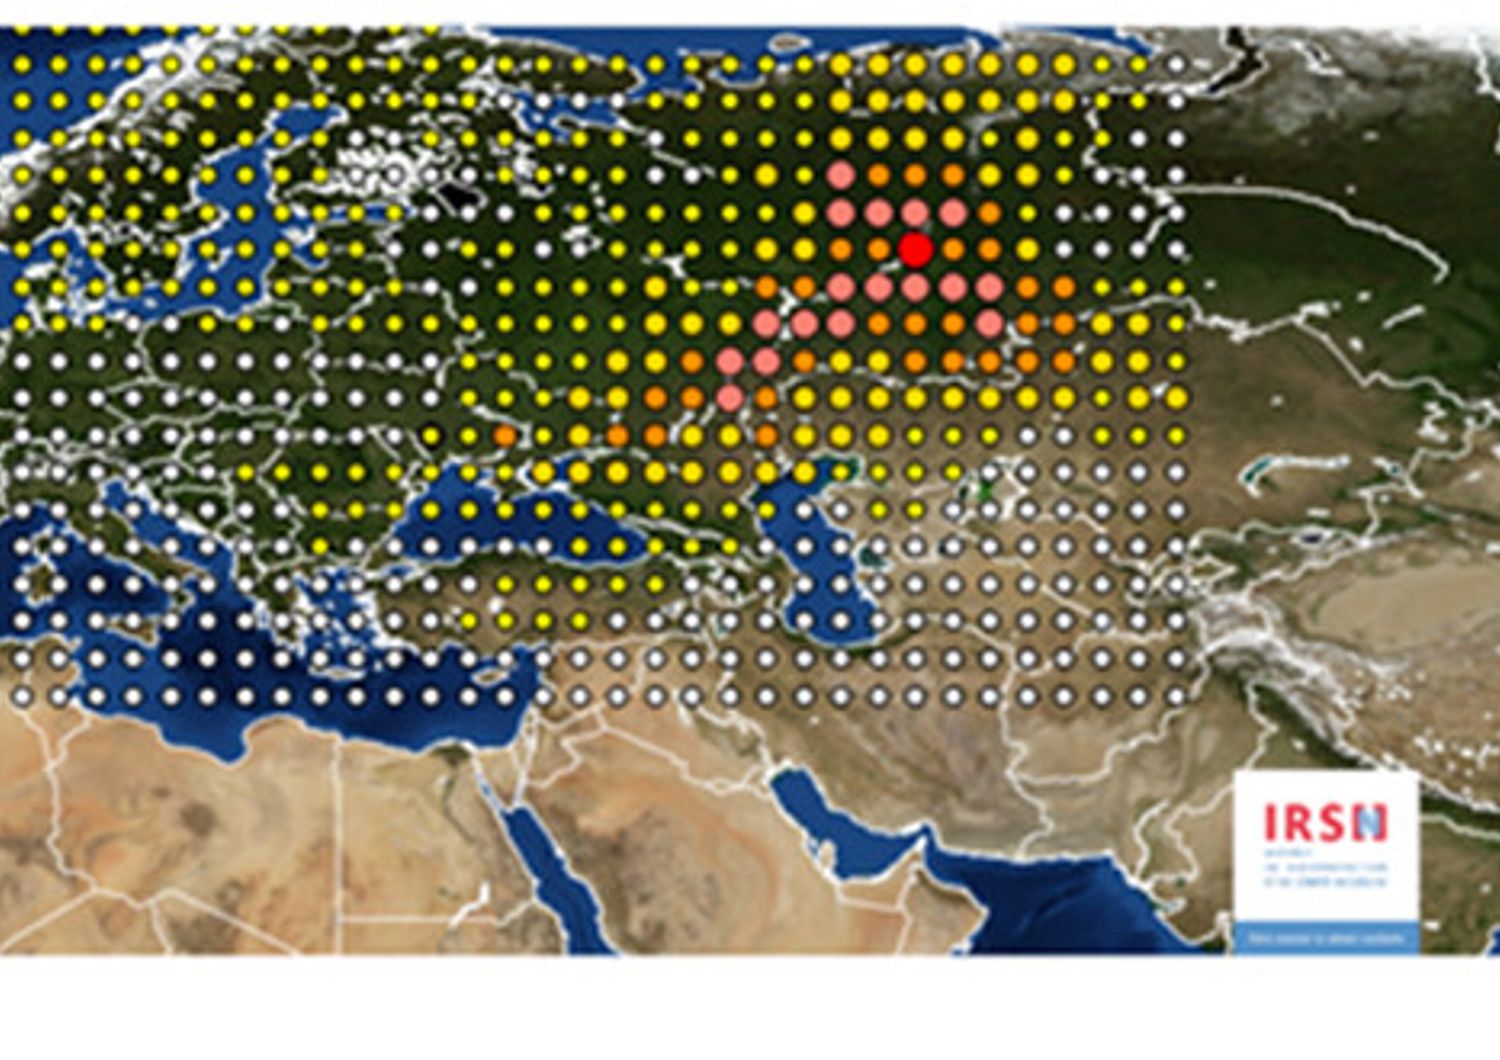 Rutenio-106 in Europa secondo una rilevazione dell'Istituto francese Irsn&nbsp;